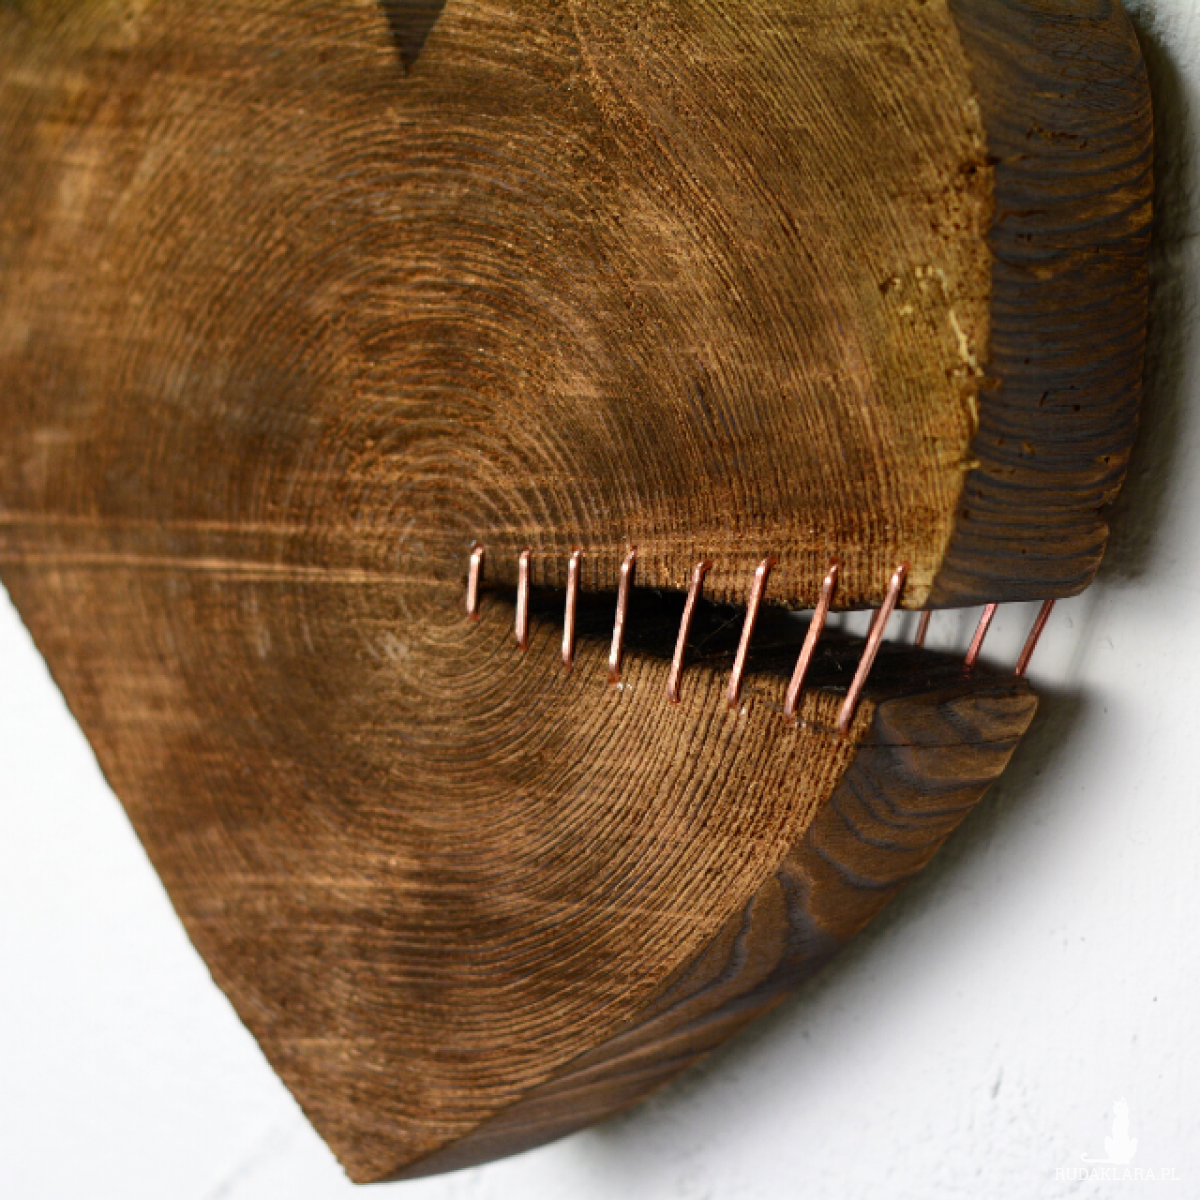 Serce ze 120 letniego drewna - prezent nie tylko na Walentynki